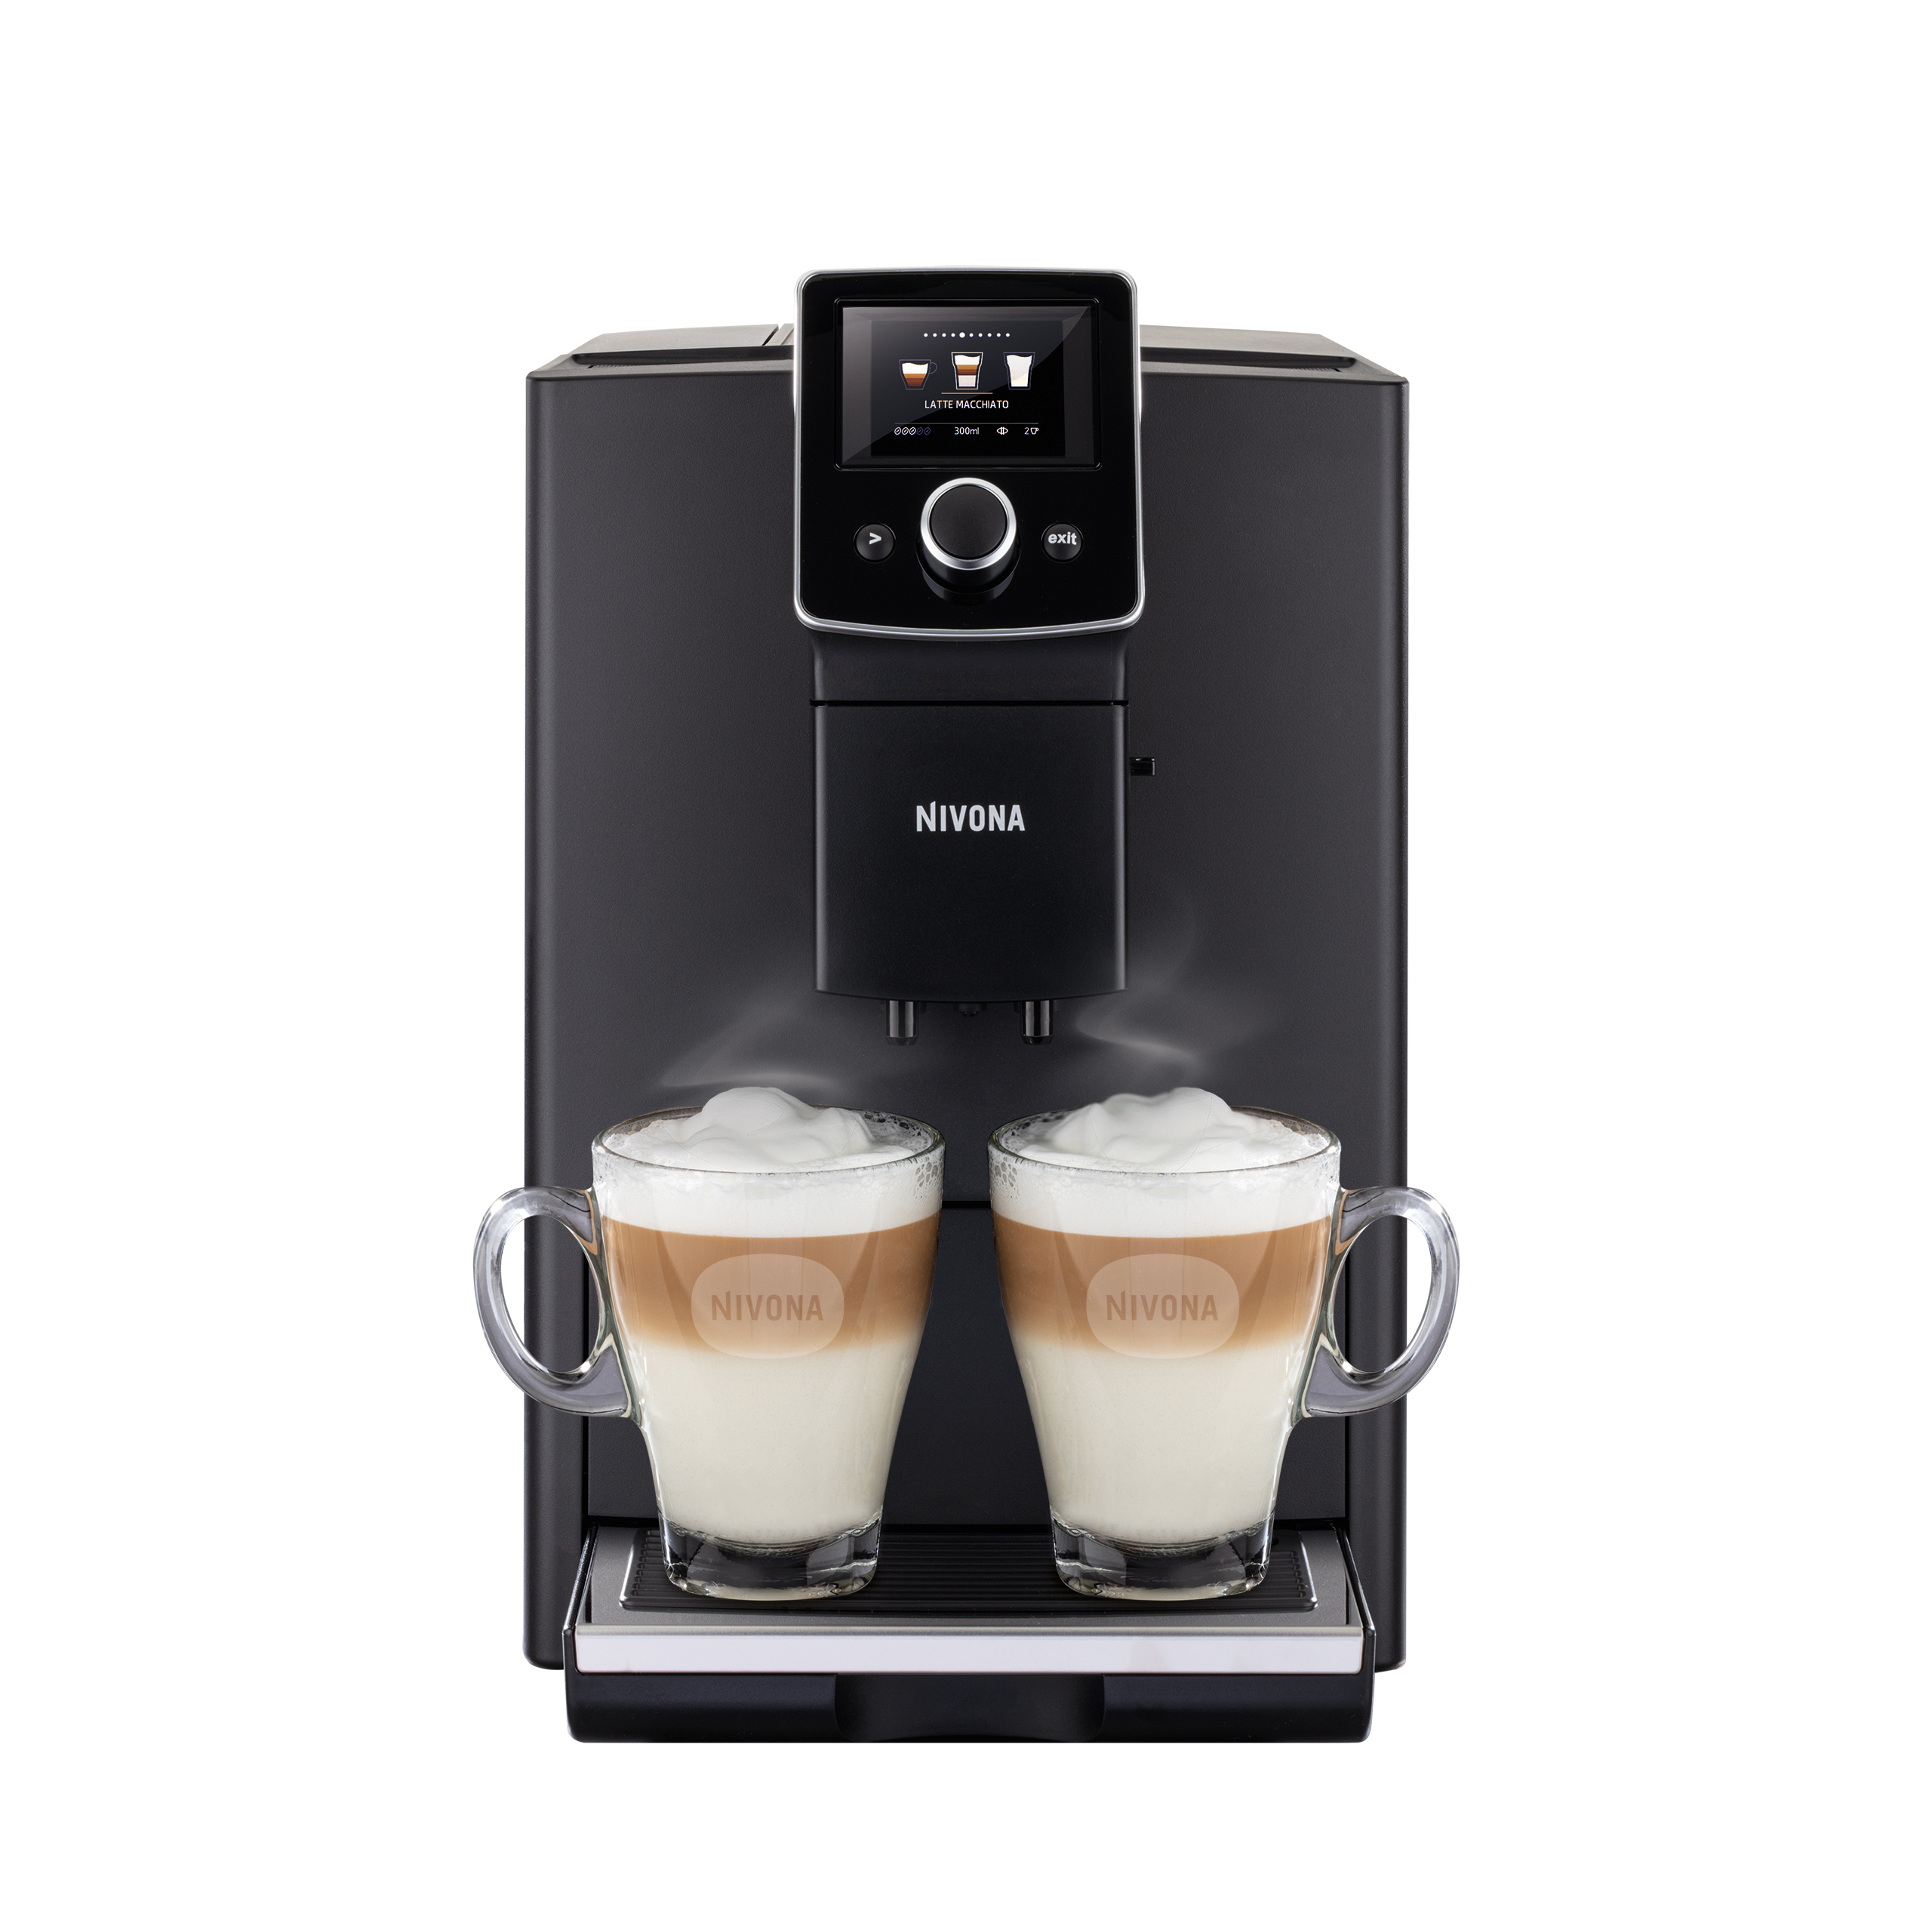 NICR 820 CafeRomatica fully automatic espresso machine